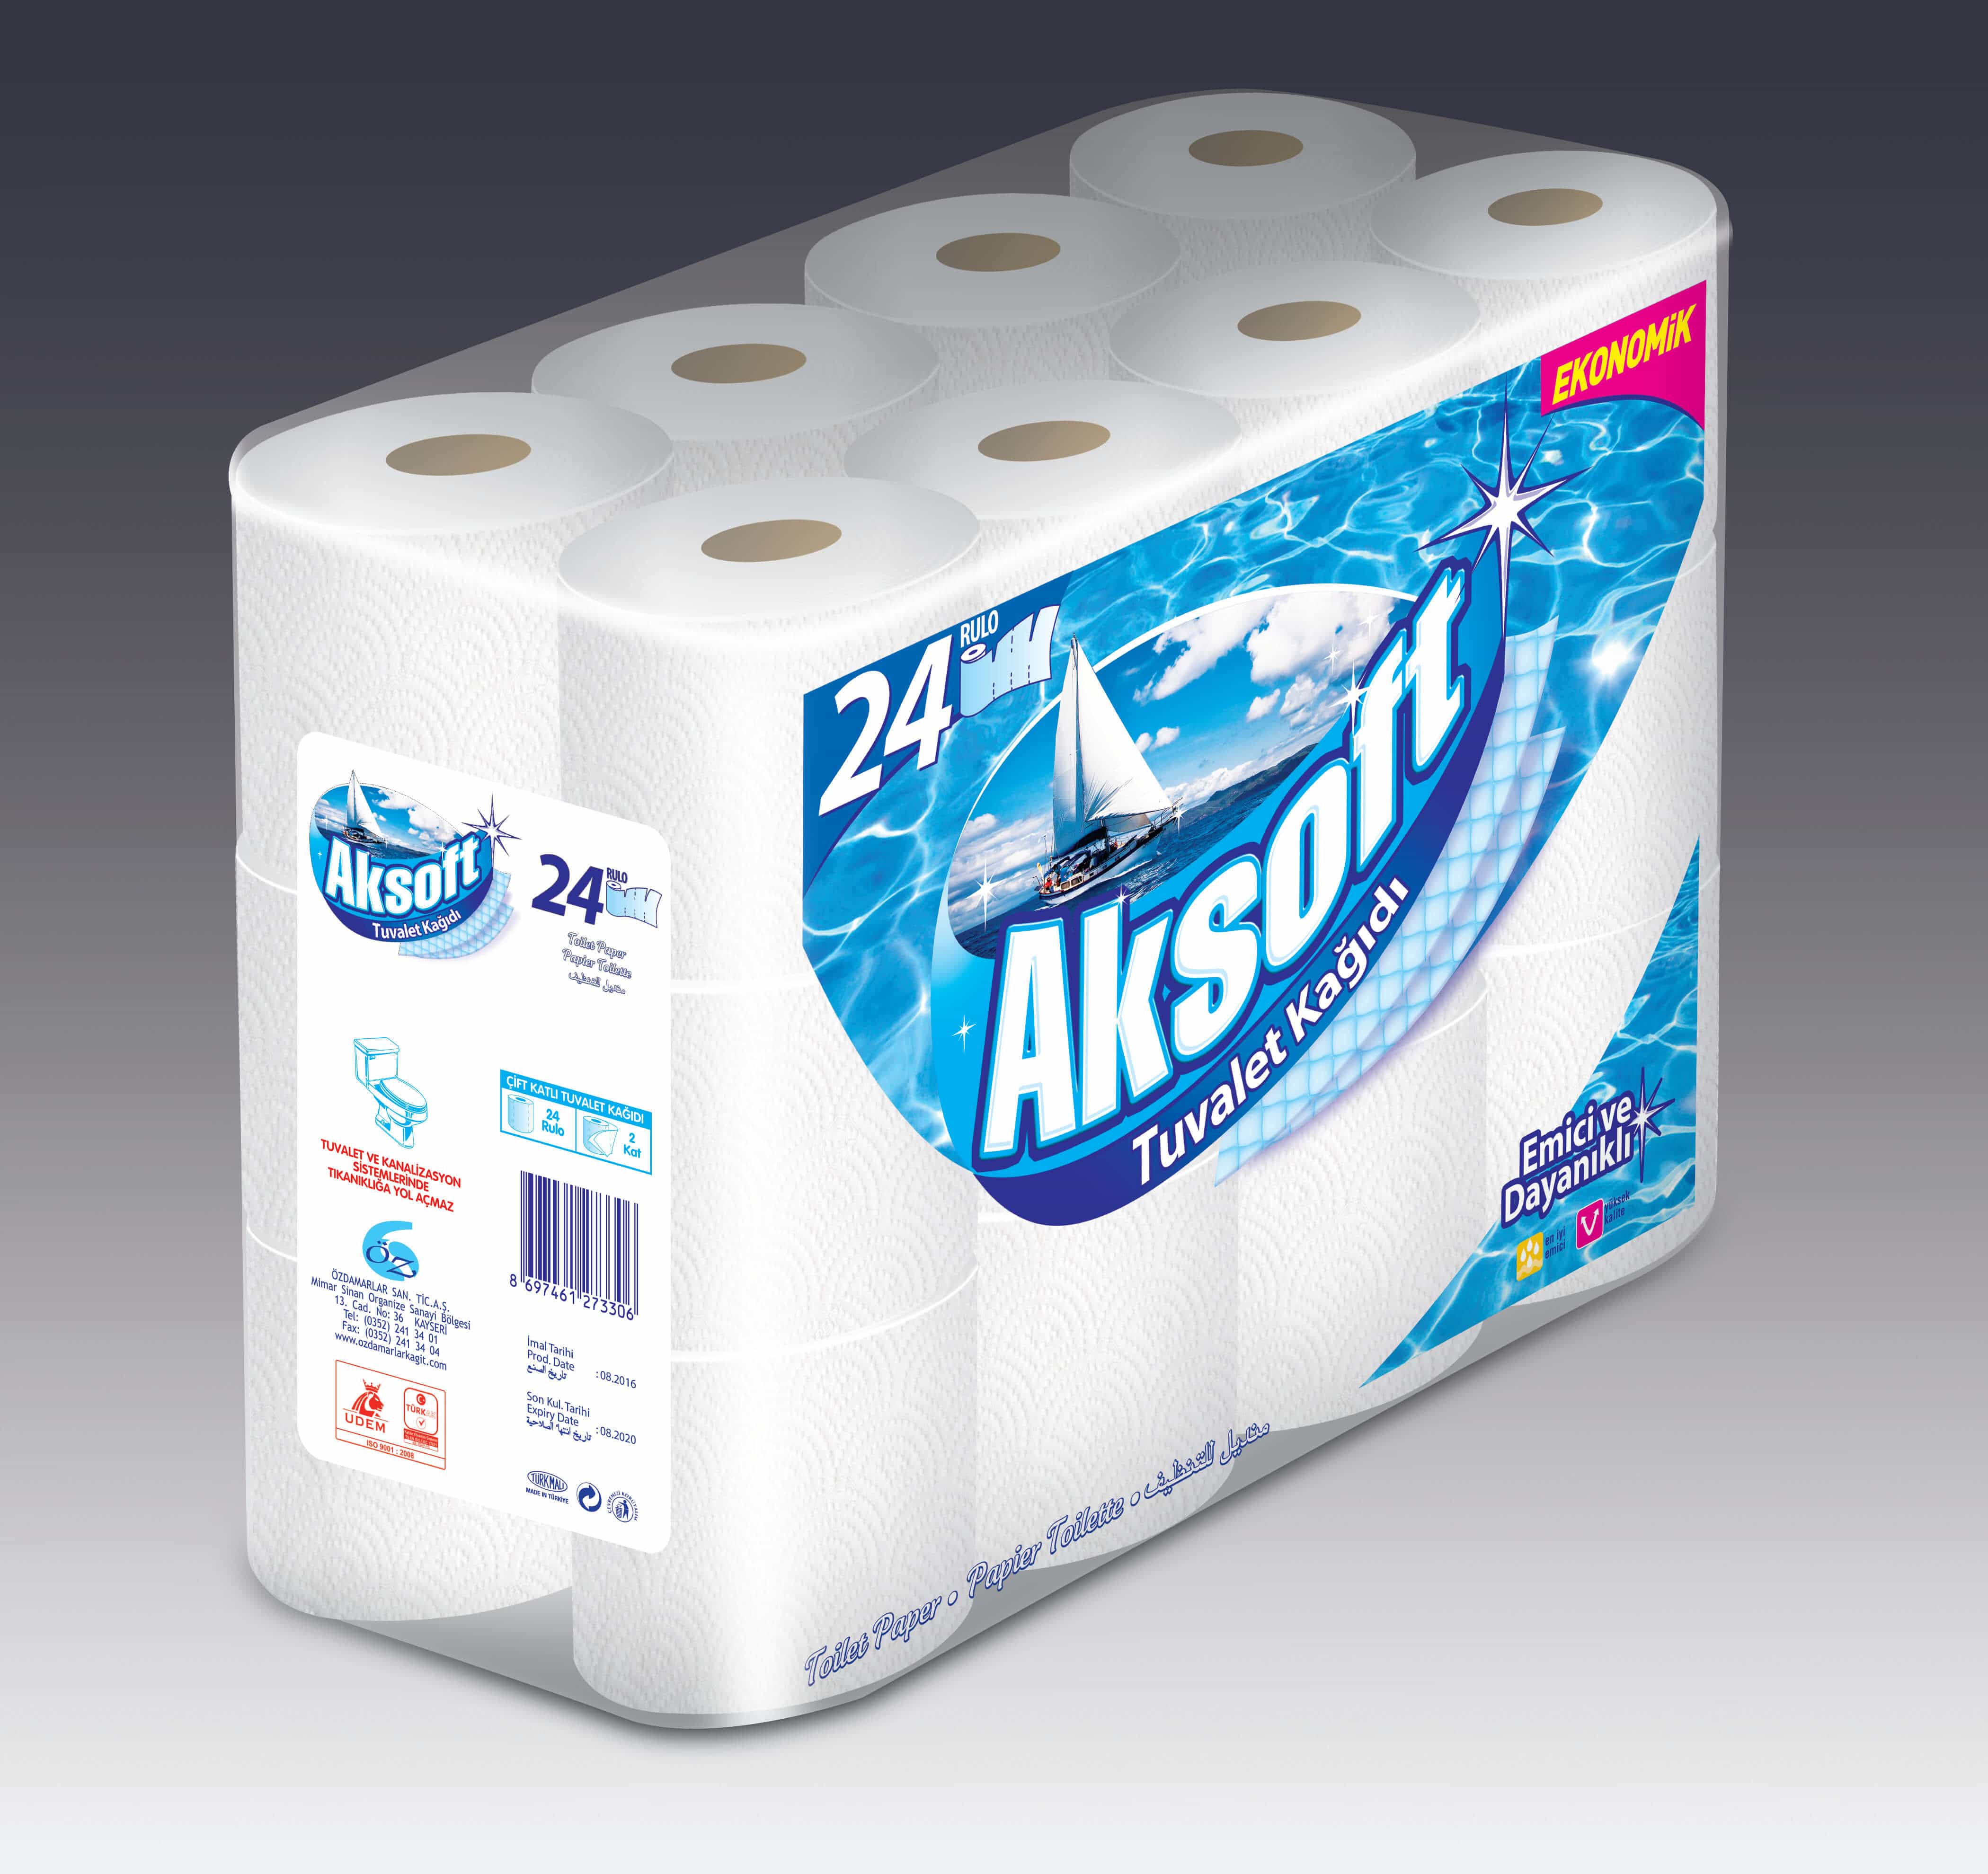 Aksoft Toilet Paper